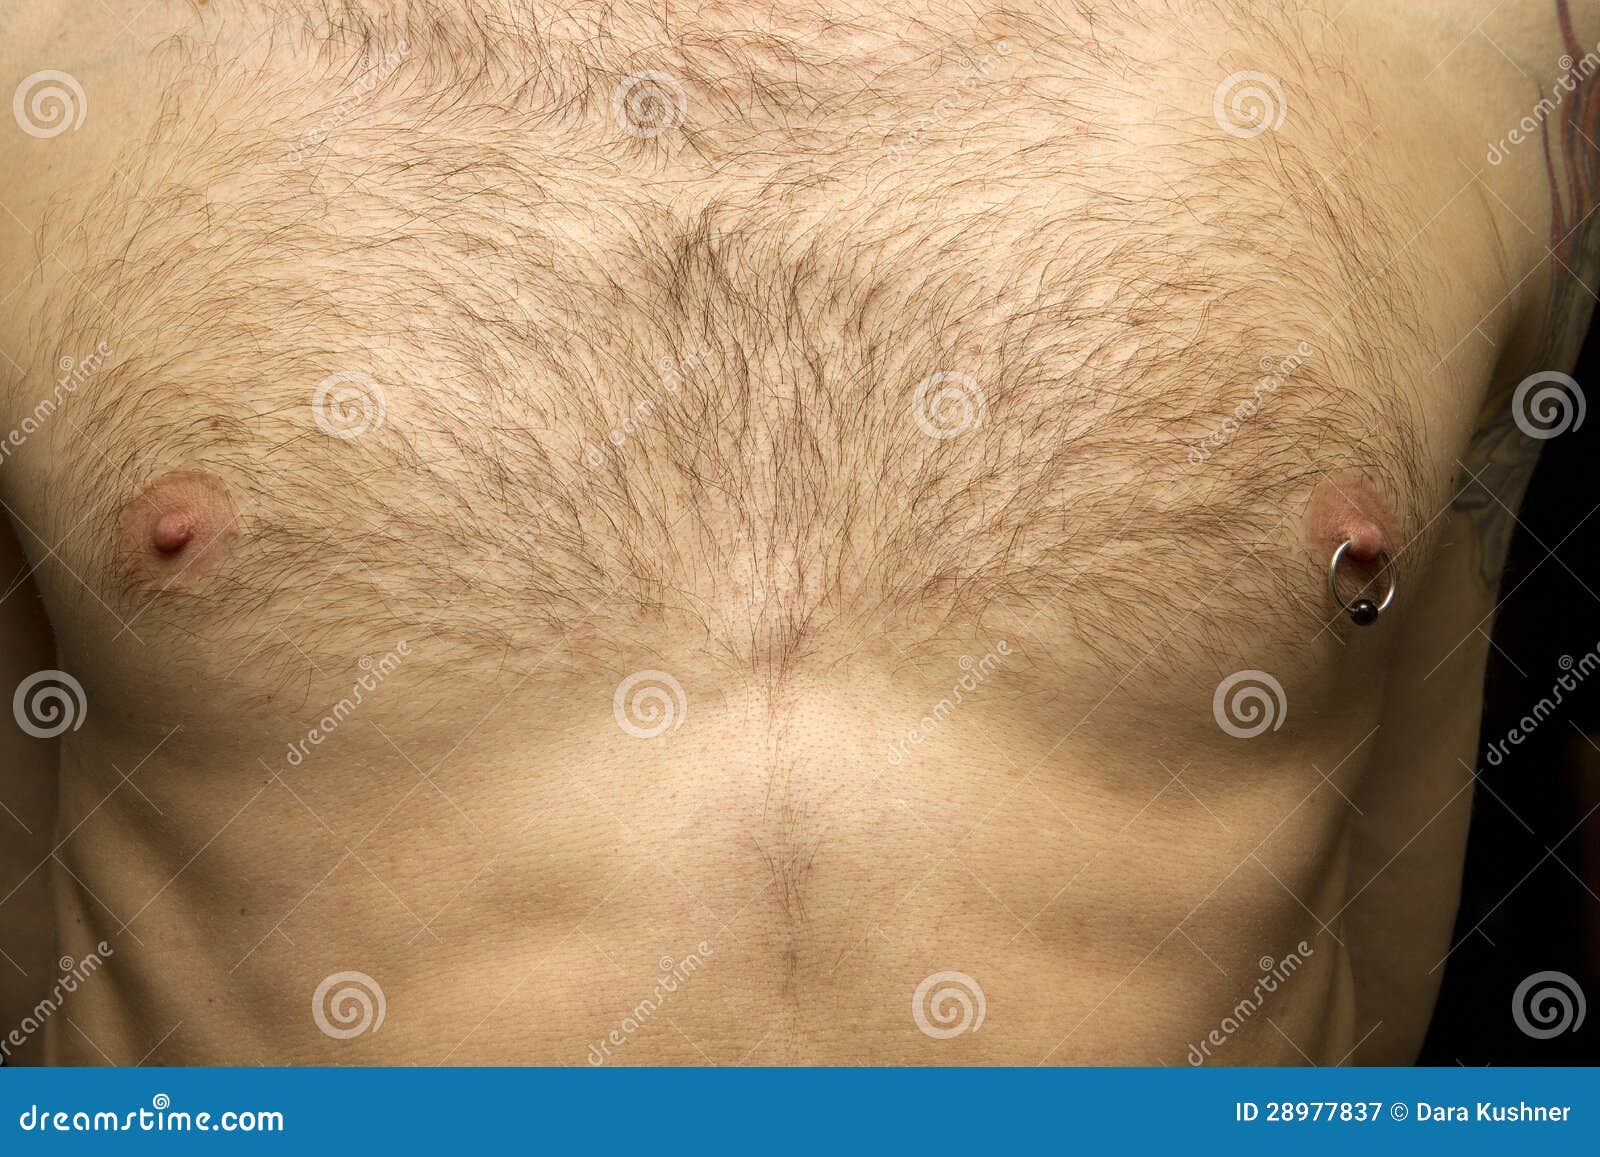 пирсинг для мужчин на груди фото 66